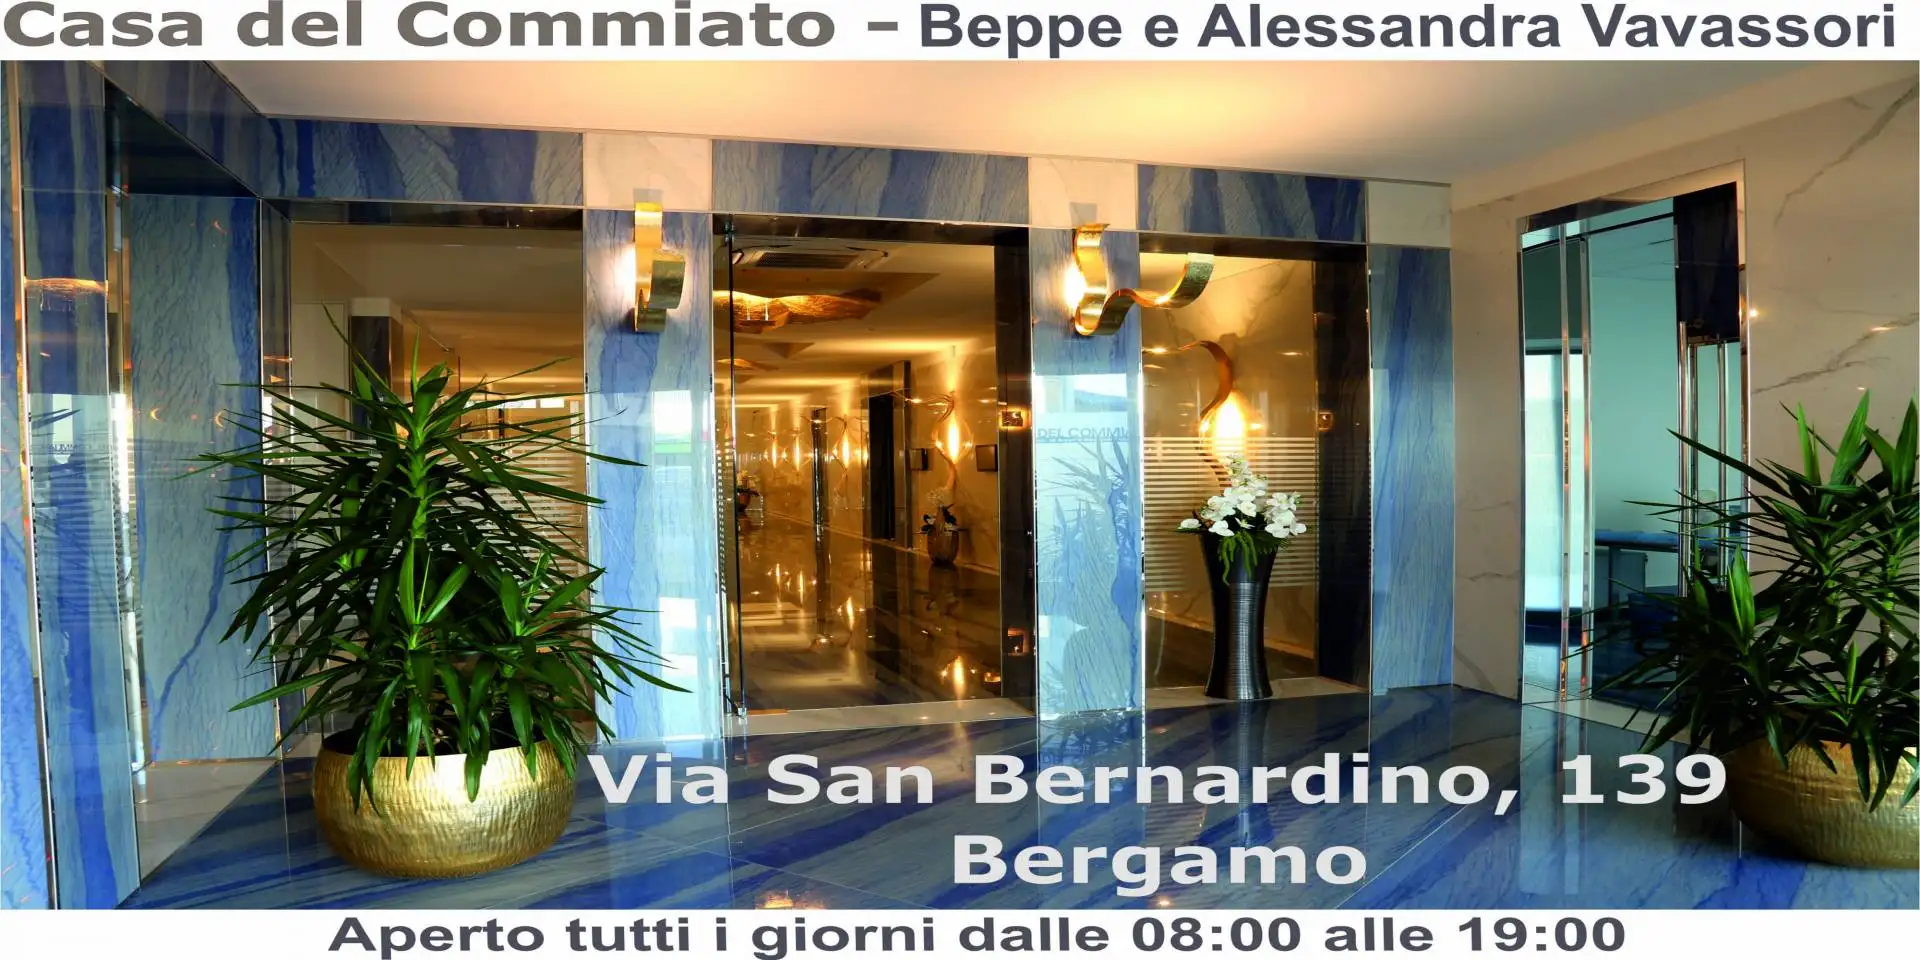 Bergamo (BG) - via San Bernardino 139, Casa del Commiato 